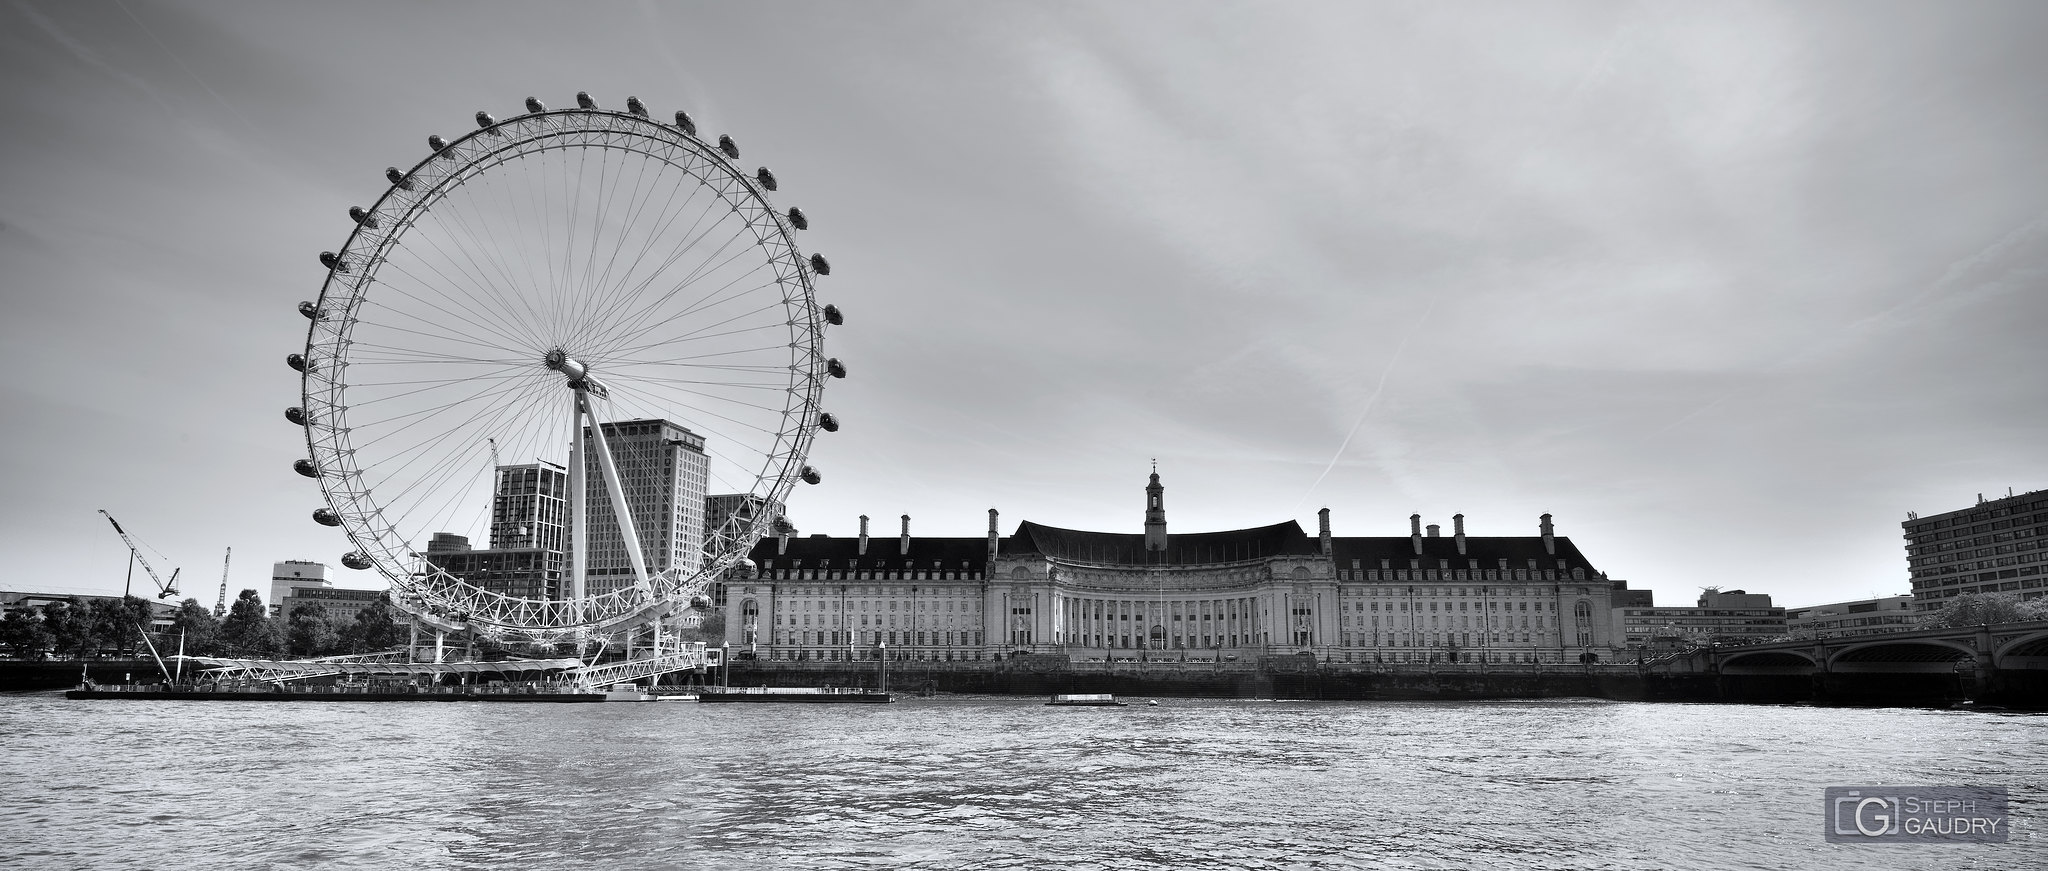 London Eye - London dungeon - Sea Life [Klicken Sie hier, um die Diashow zu starten]